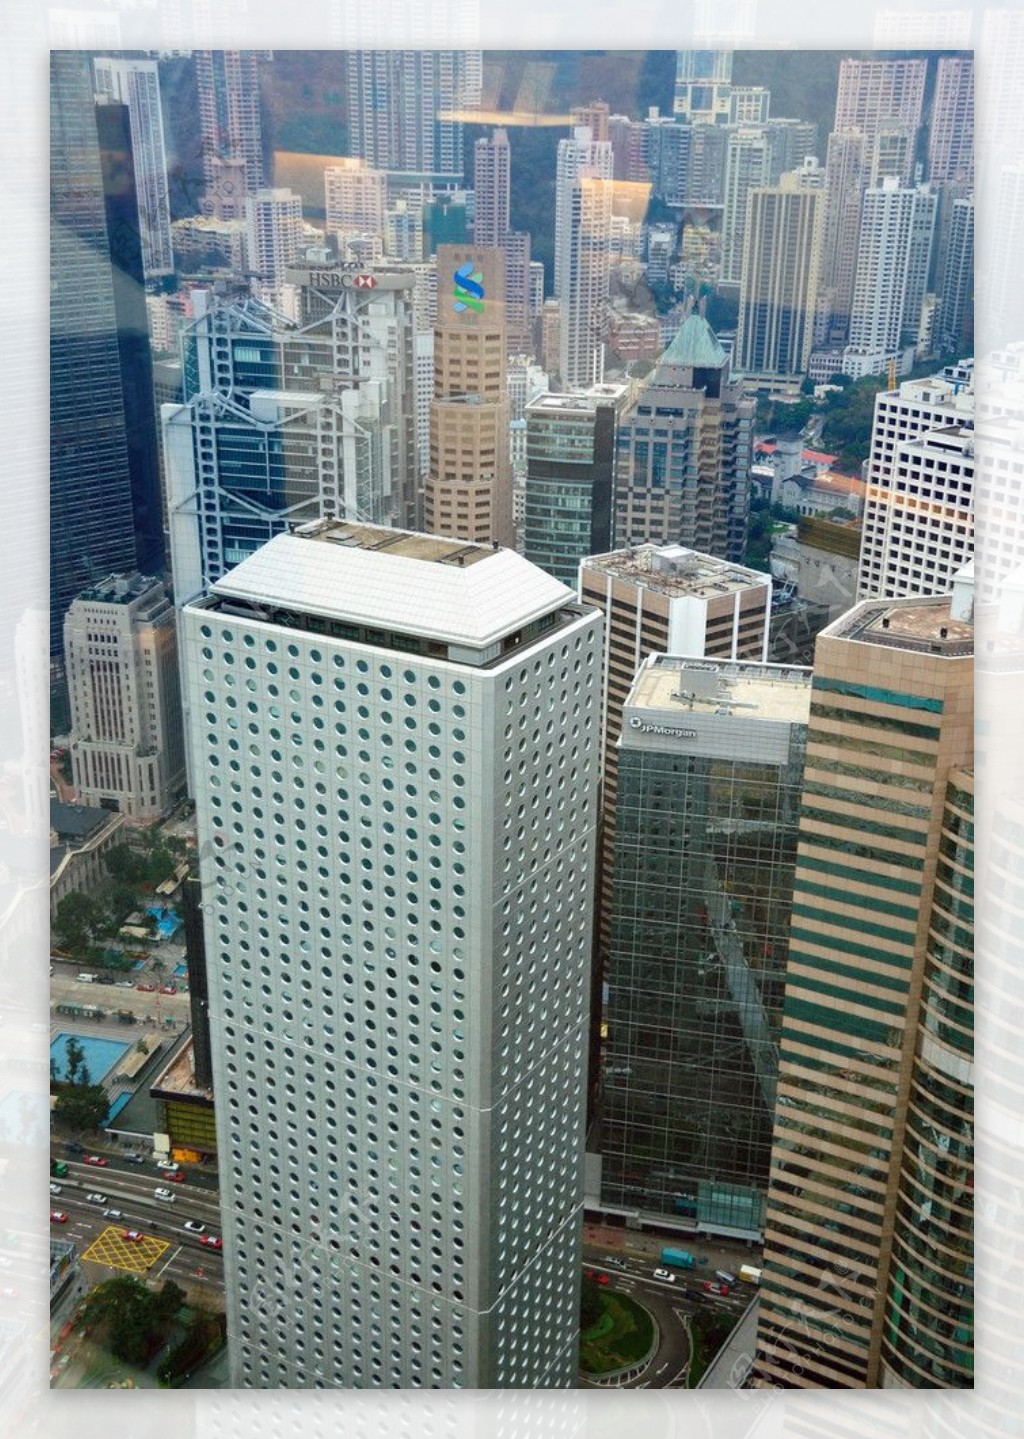 香港高樓林立的中環商務區图片